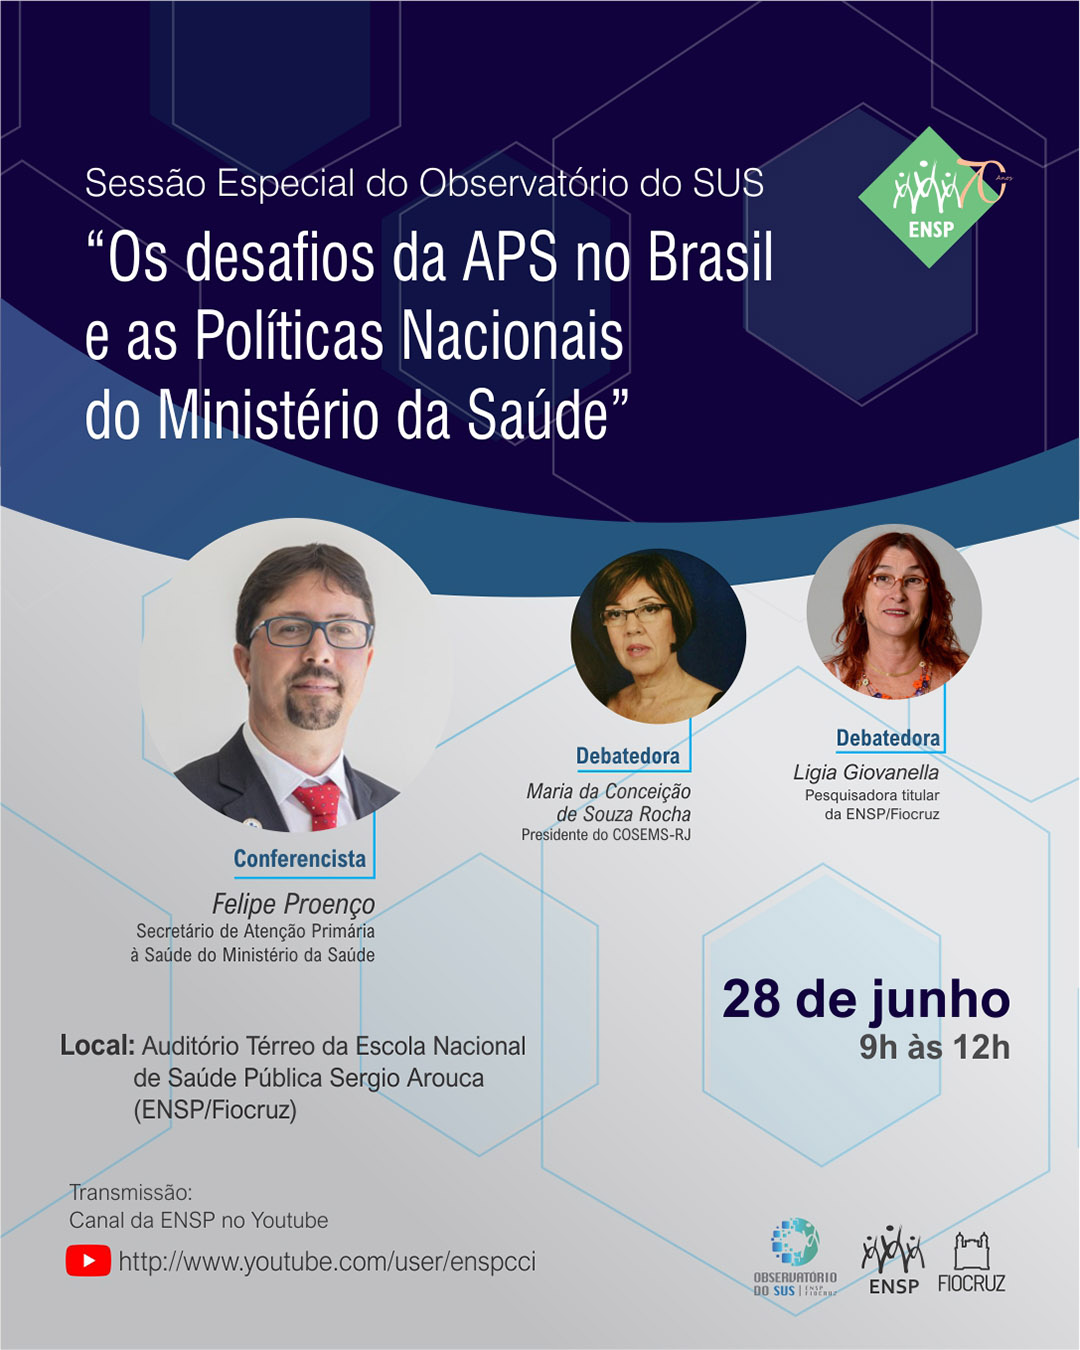 Sessão especial do observatório do SUS: Os desafios da Atenção Primária no Brasil e as Políticas Nacionais do Ministério da Saúde